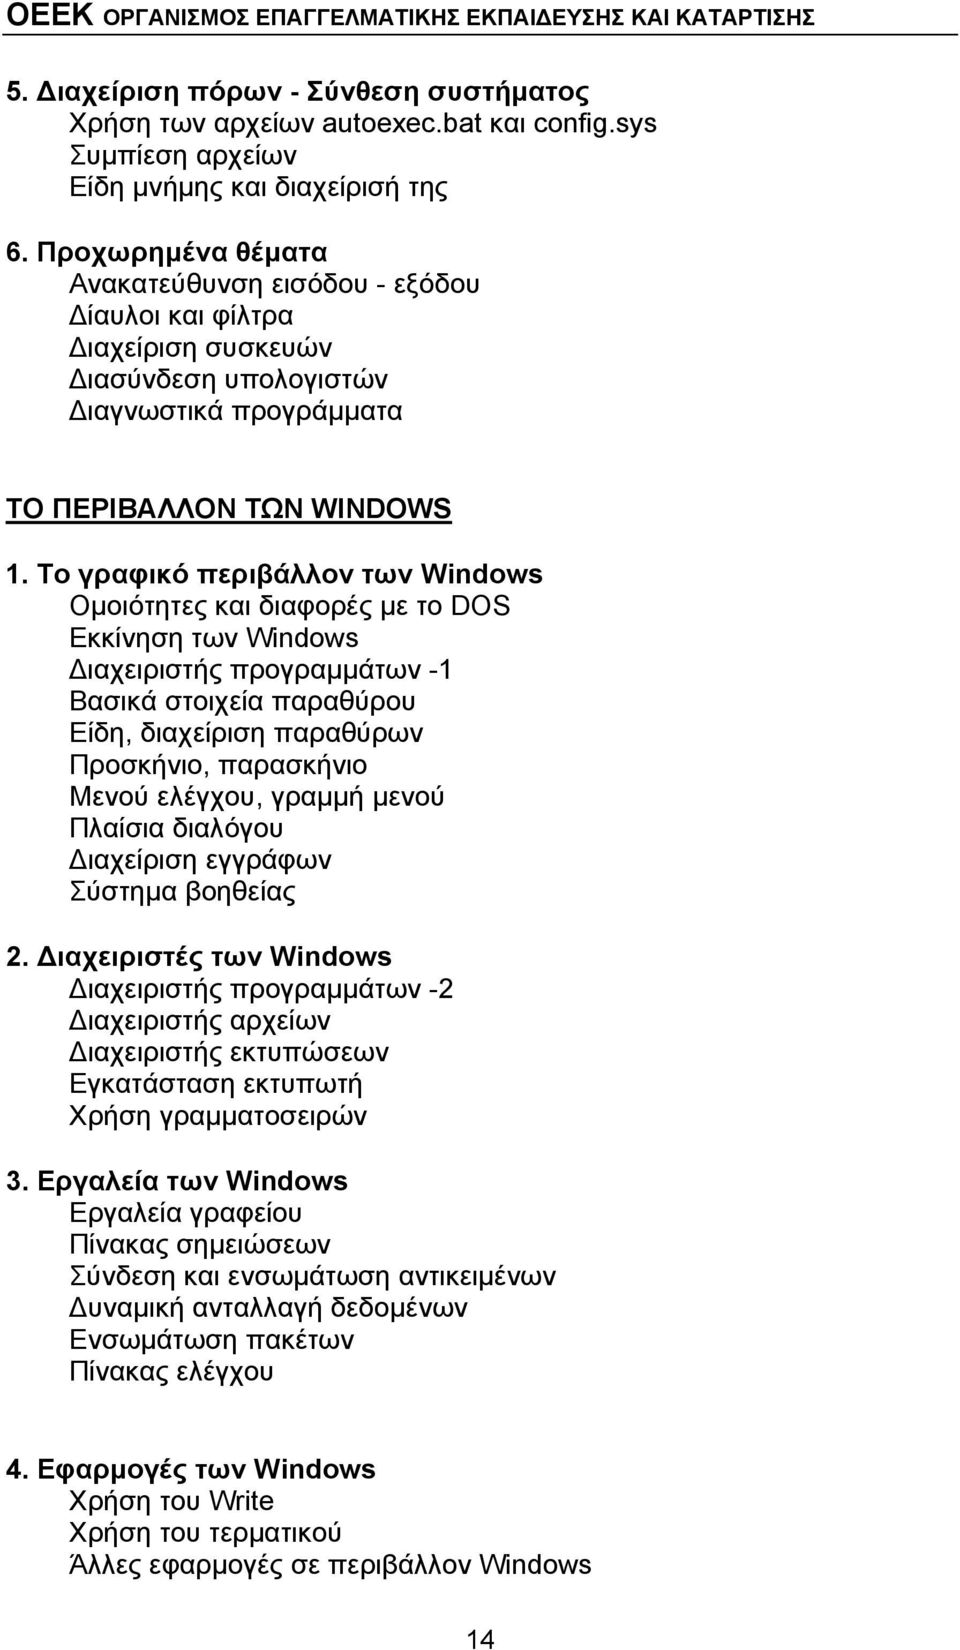 Το γραφικό περιβάλλον των Windows Ομοιότητες και διαφορές με το DOS Εκκίνηση των Windows Διαχειριστής προγραμμάτων -1 Βασικά στοιχεία παραθύρου Είδη, διαχείριση παραθύρων Προσκήνιο, παρασκήνιο Μενού